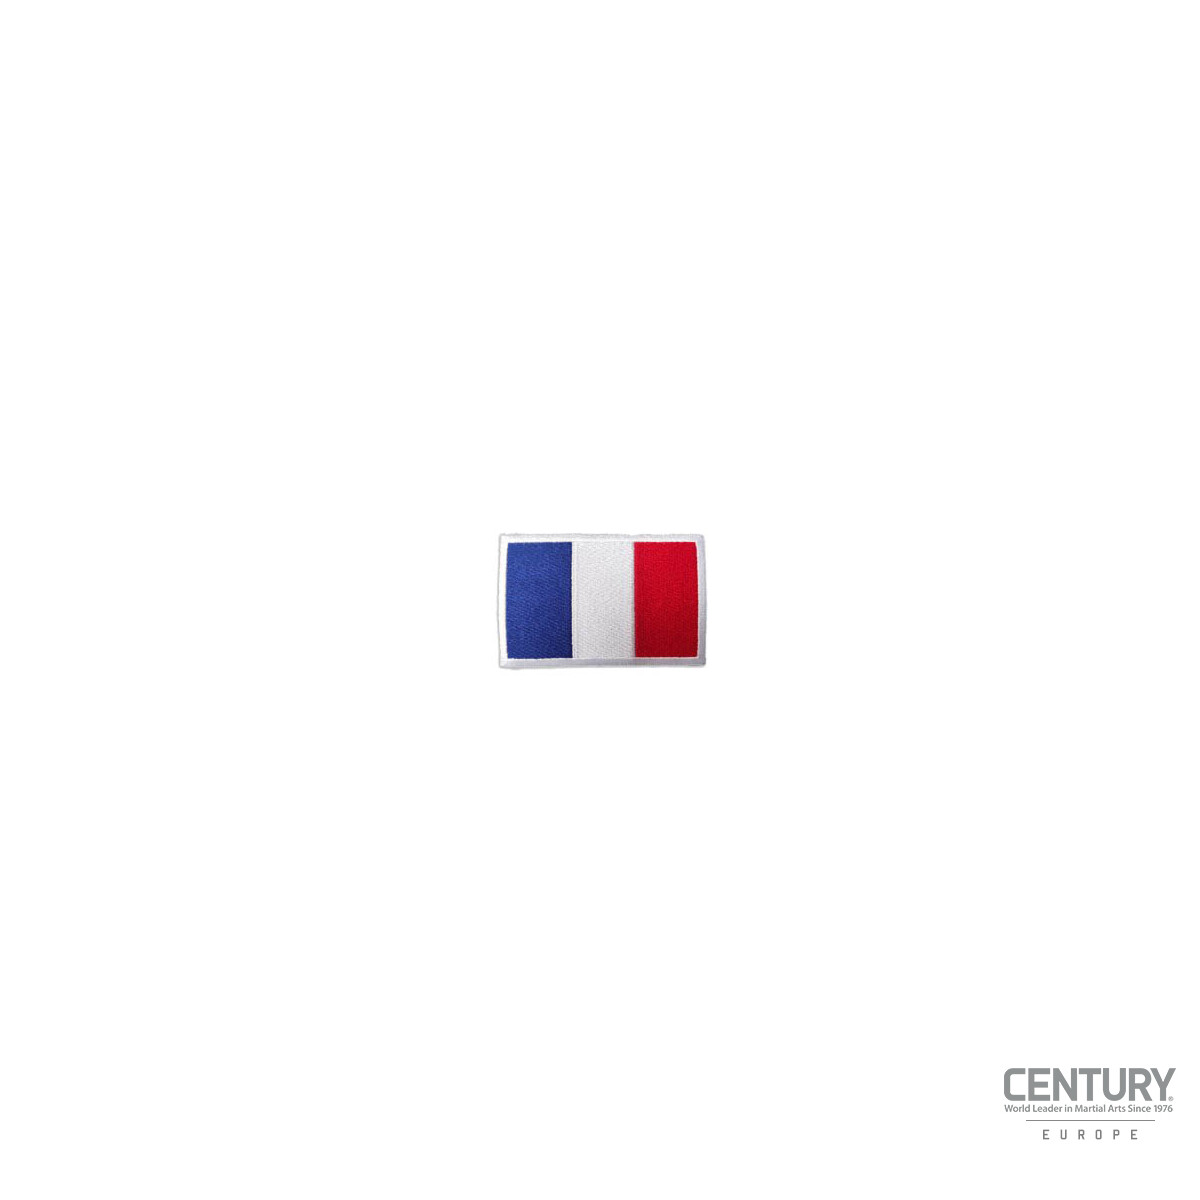 Landesflaggen Abzeichen Frankreich